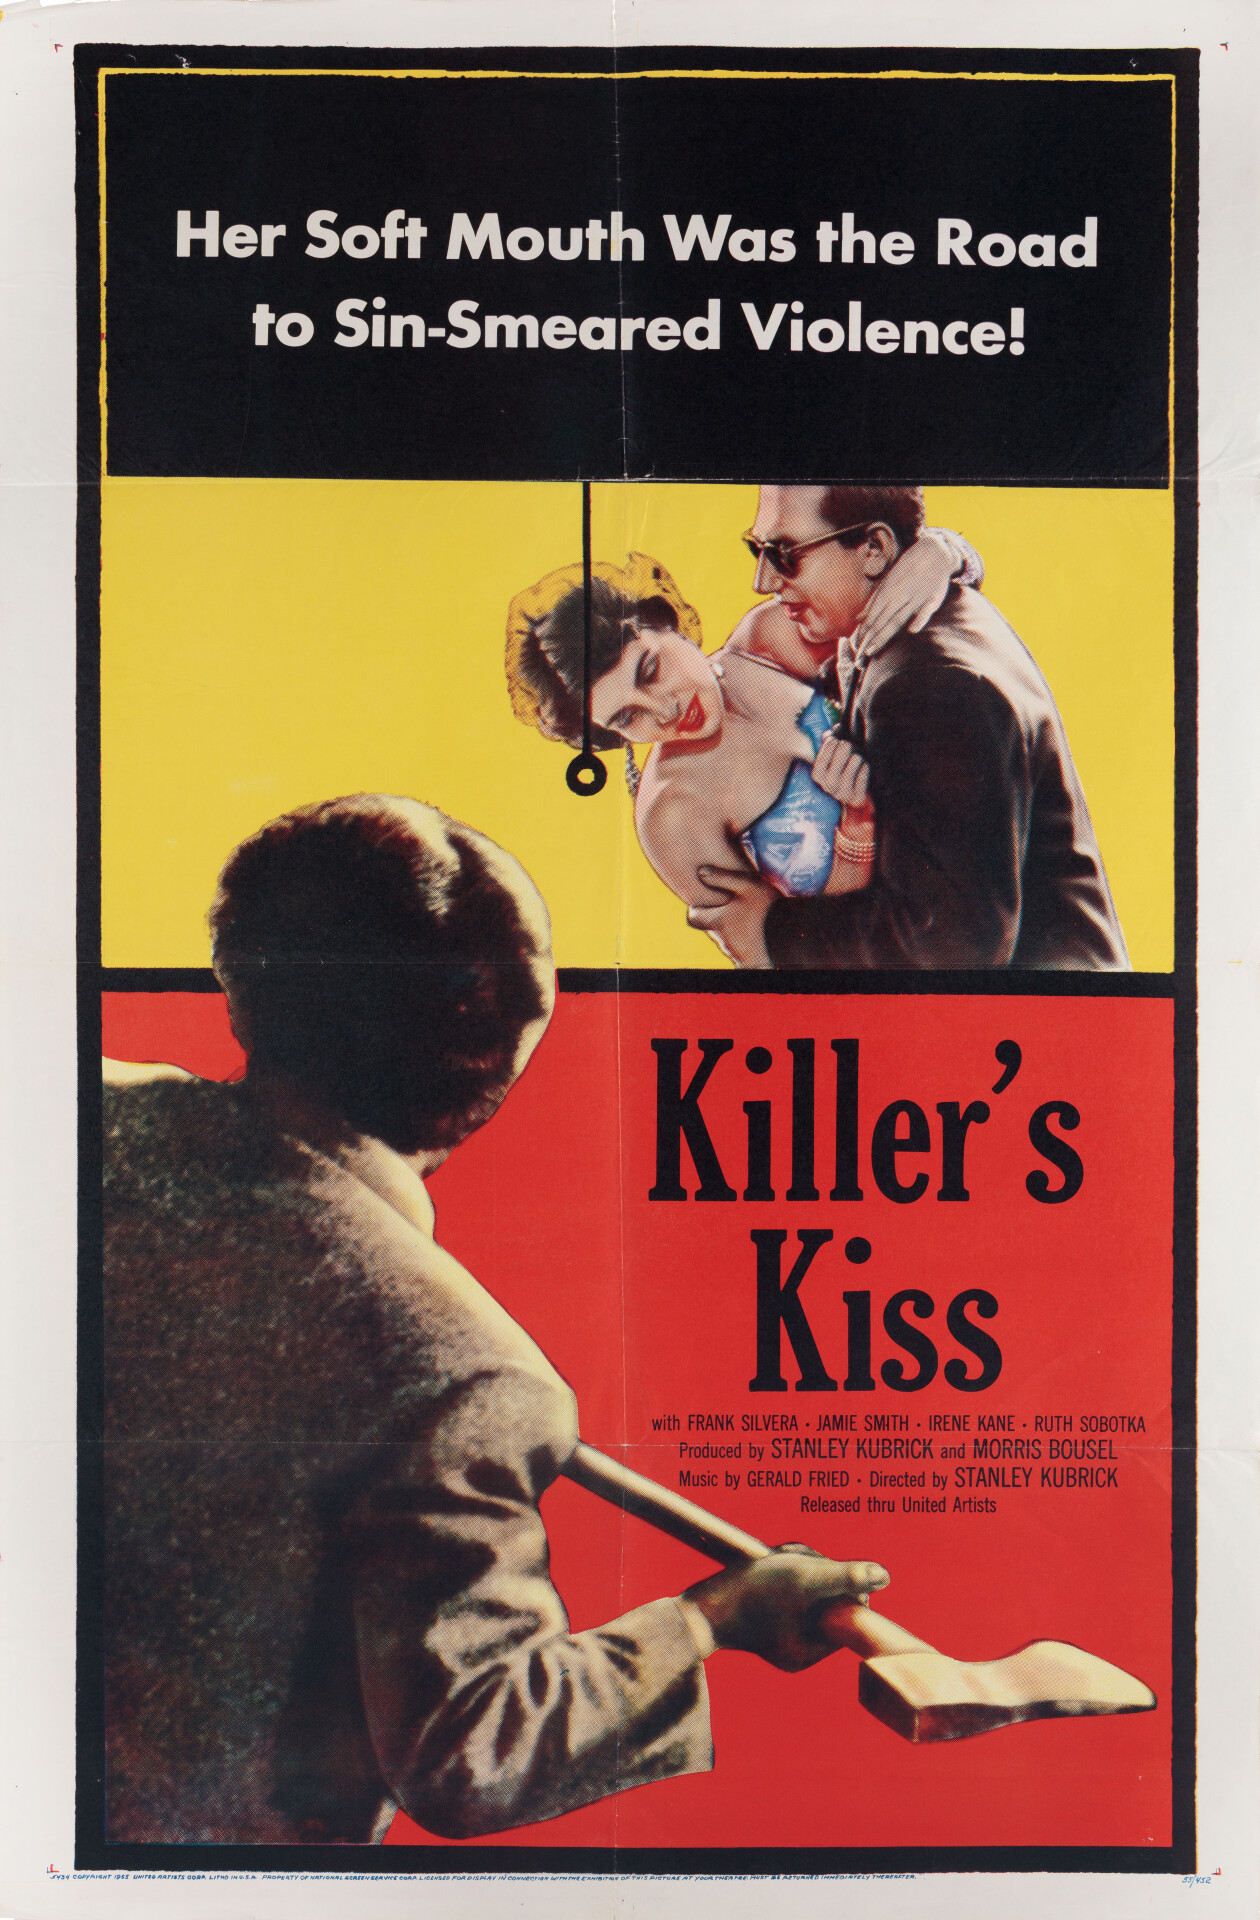 Поцелуй убийцы (Killers Kiss, 1955), режиссёр Стэнли Кубрик, американский постер к фильму (графический дизайн, 1955 год)